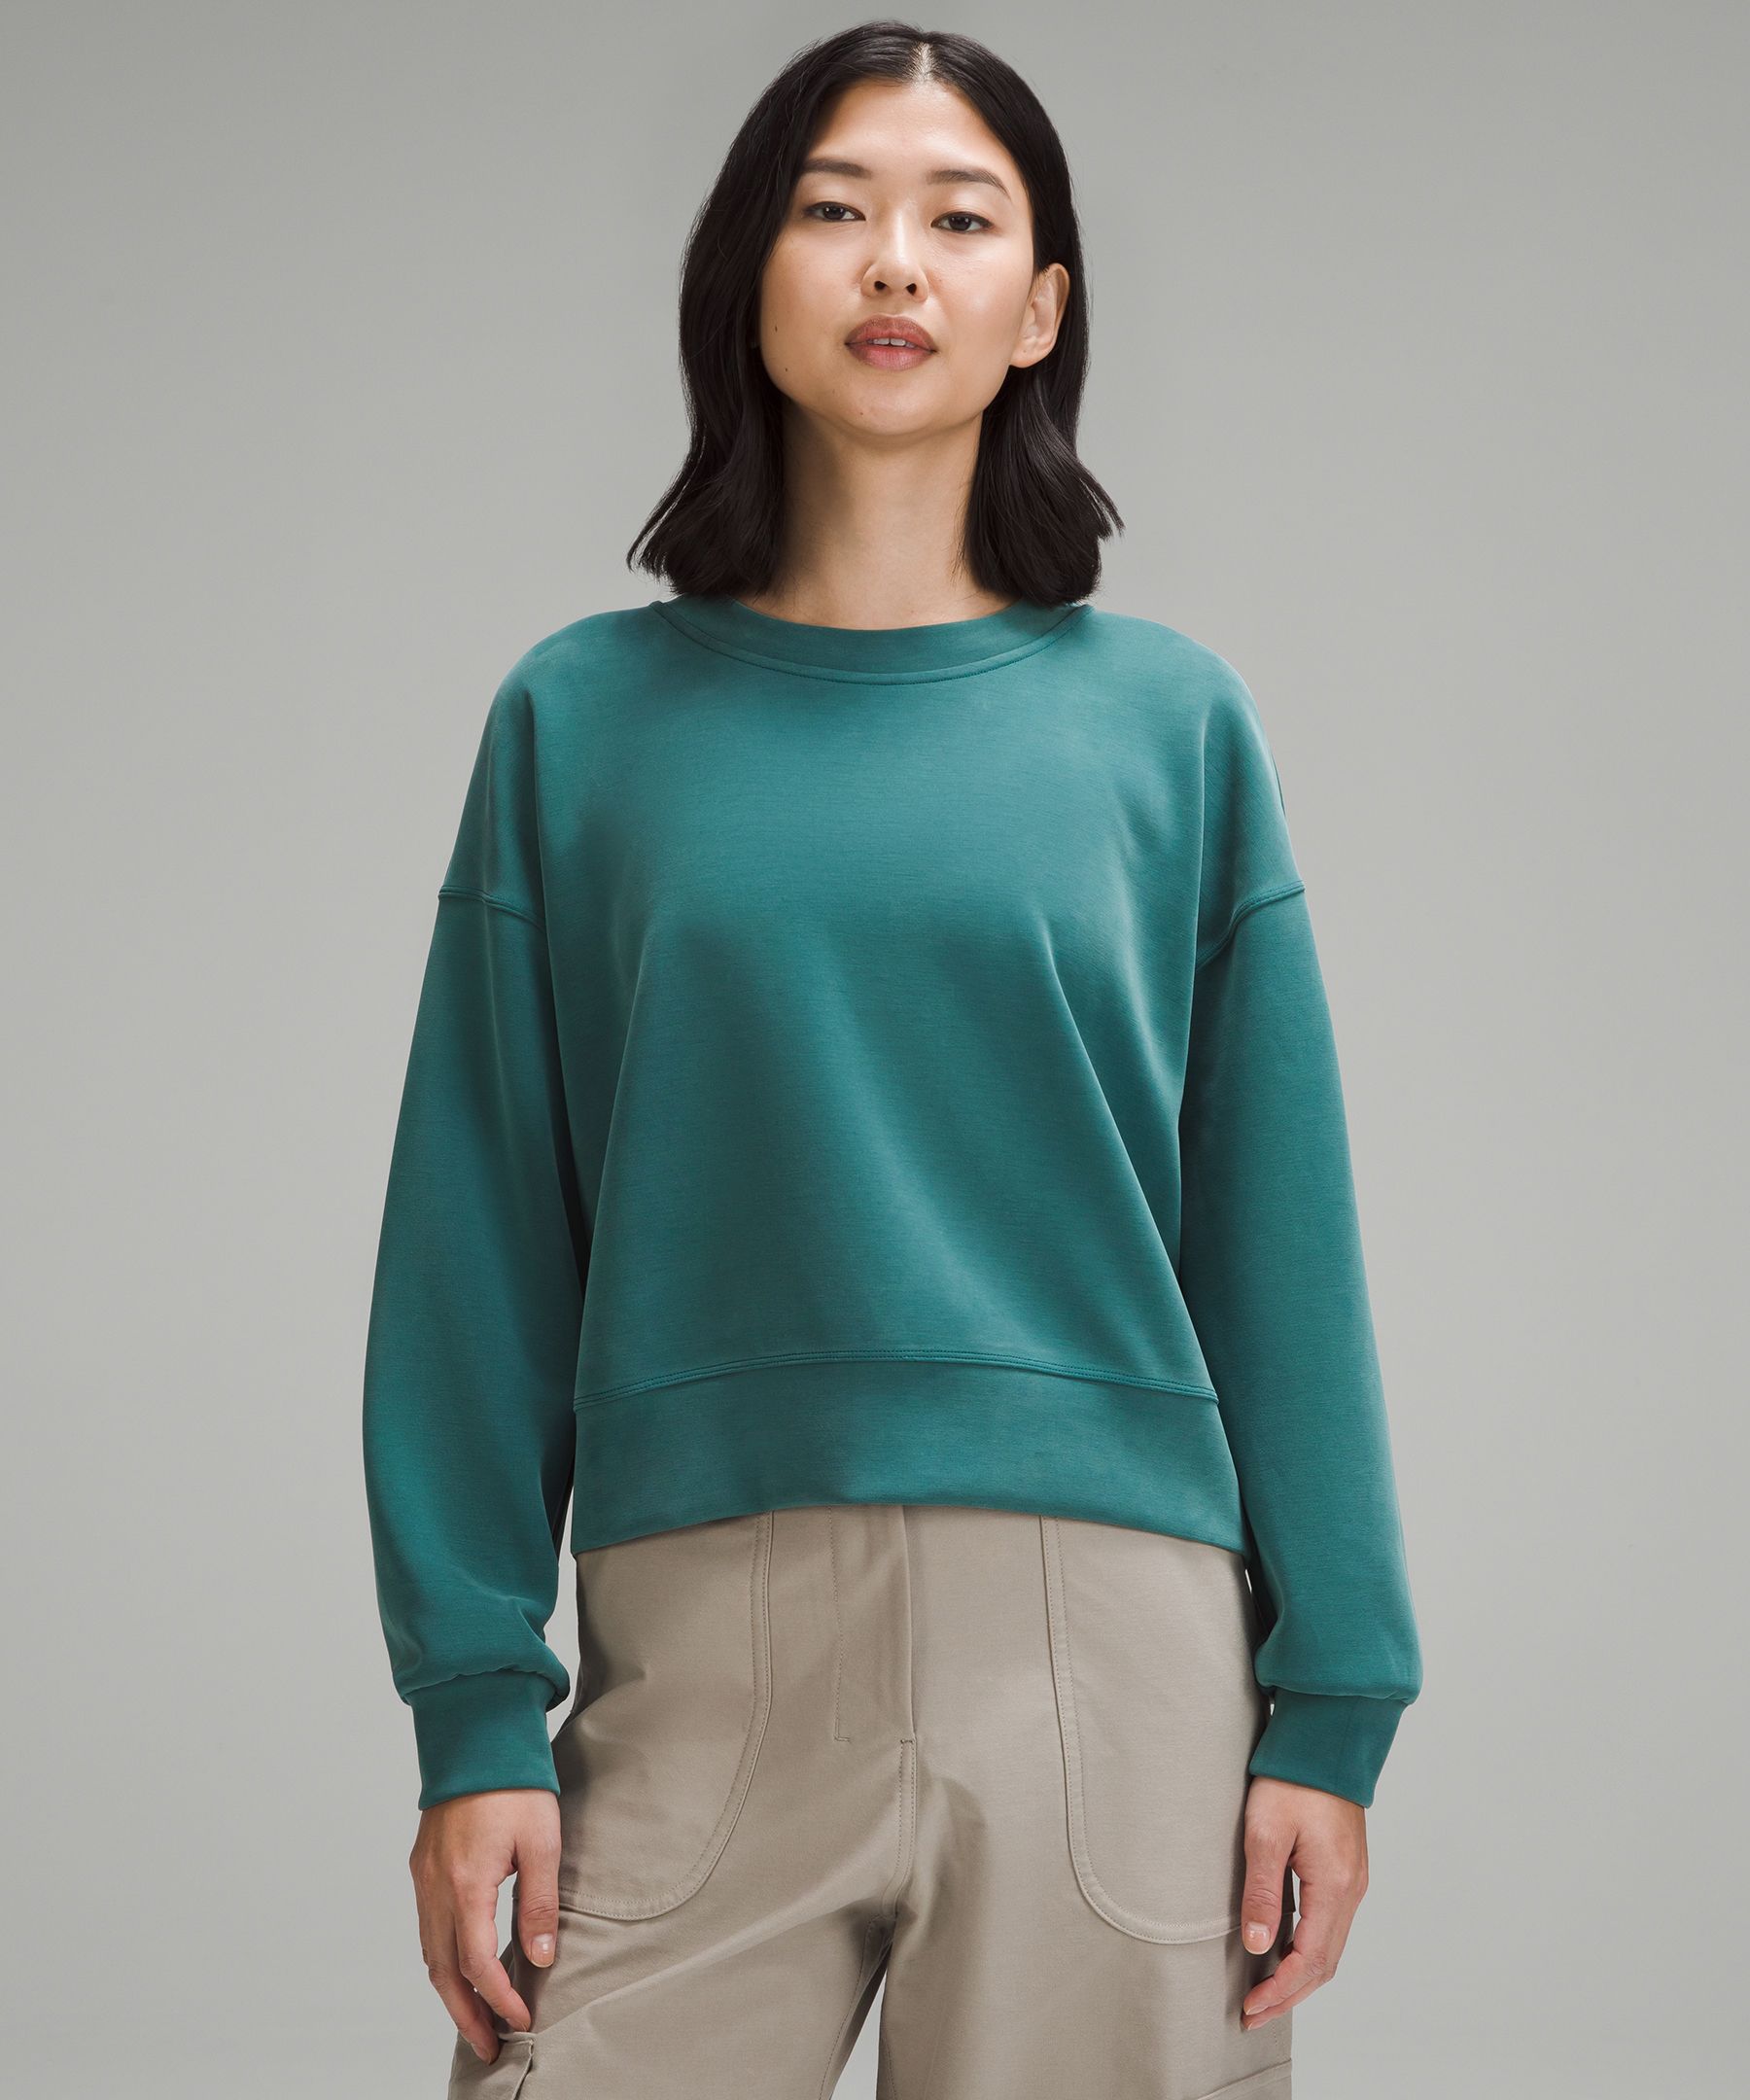 Lululemon softstreme sweat shirt size 0, Women's Fashion